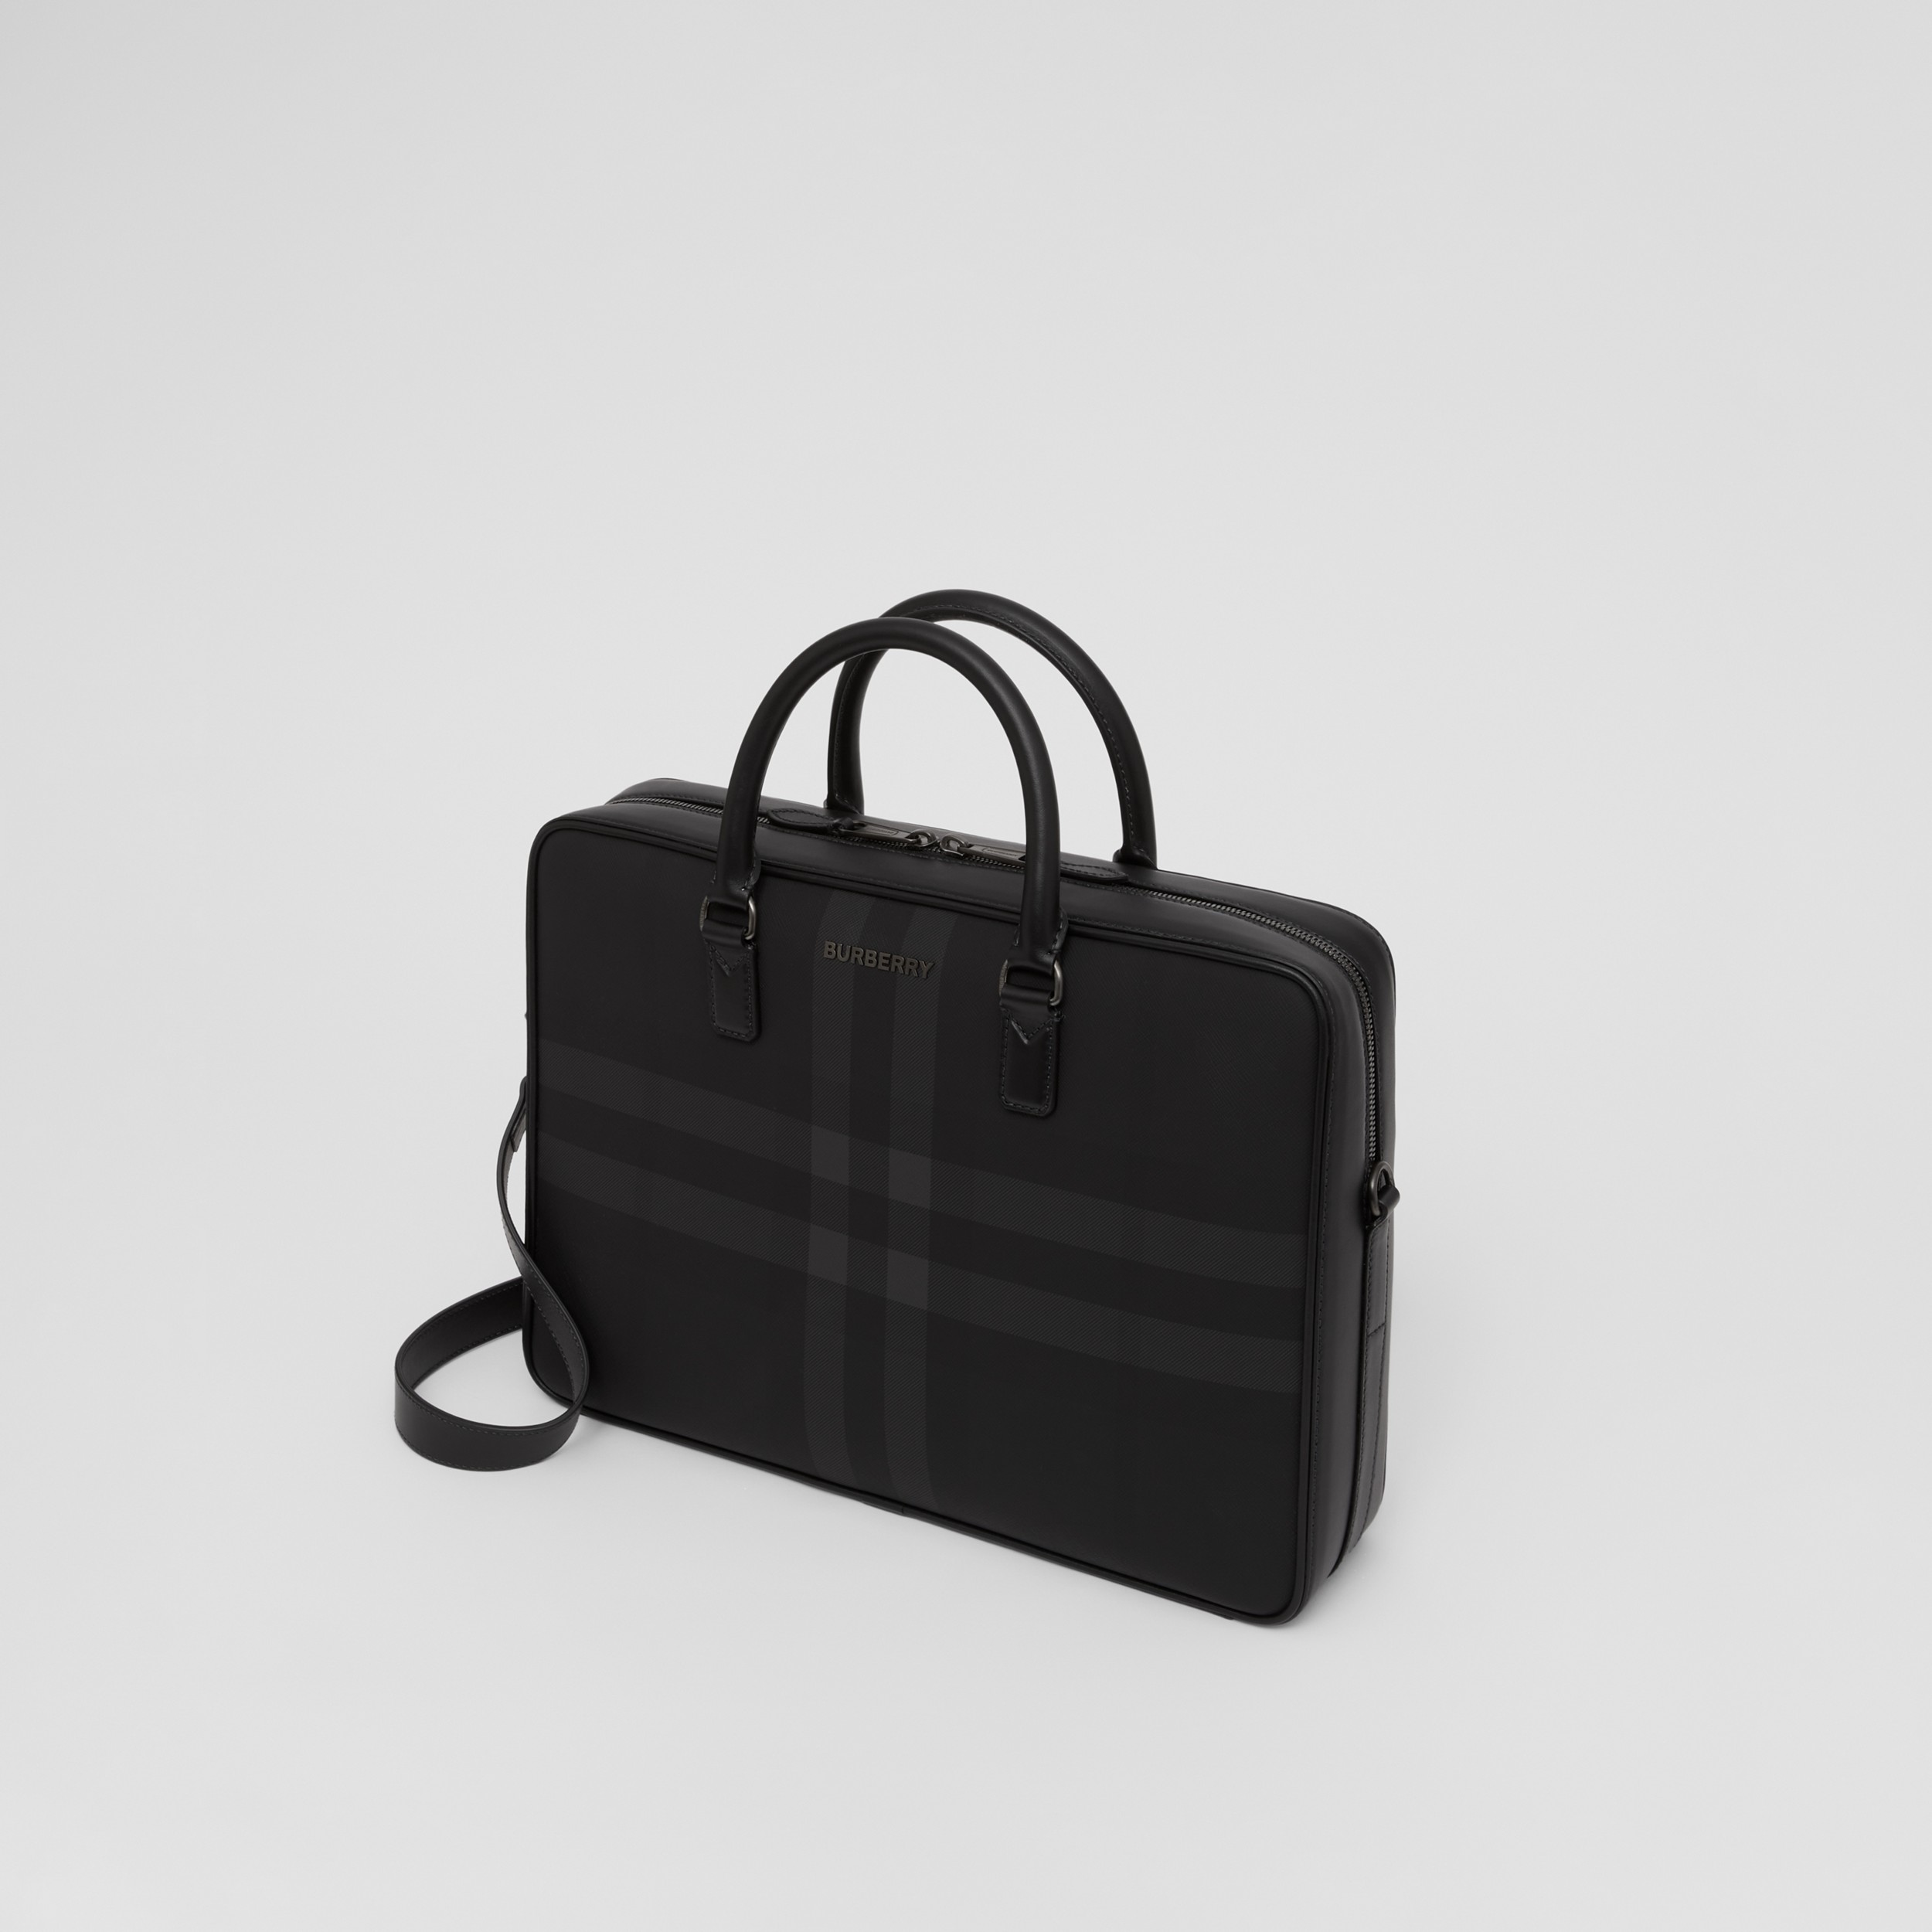 cavité Départ Saké burberry mens briefcase jalousie Publicité calorie